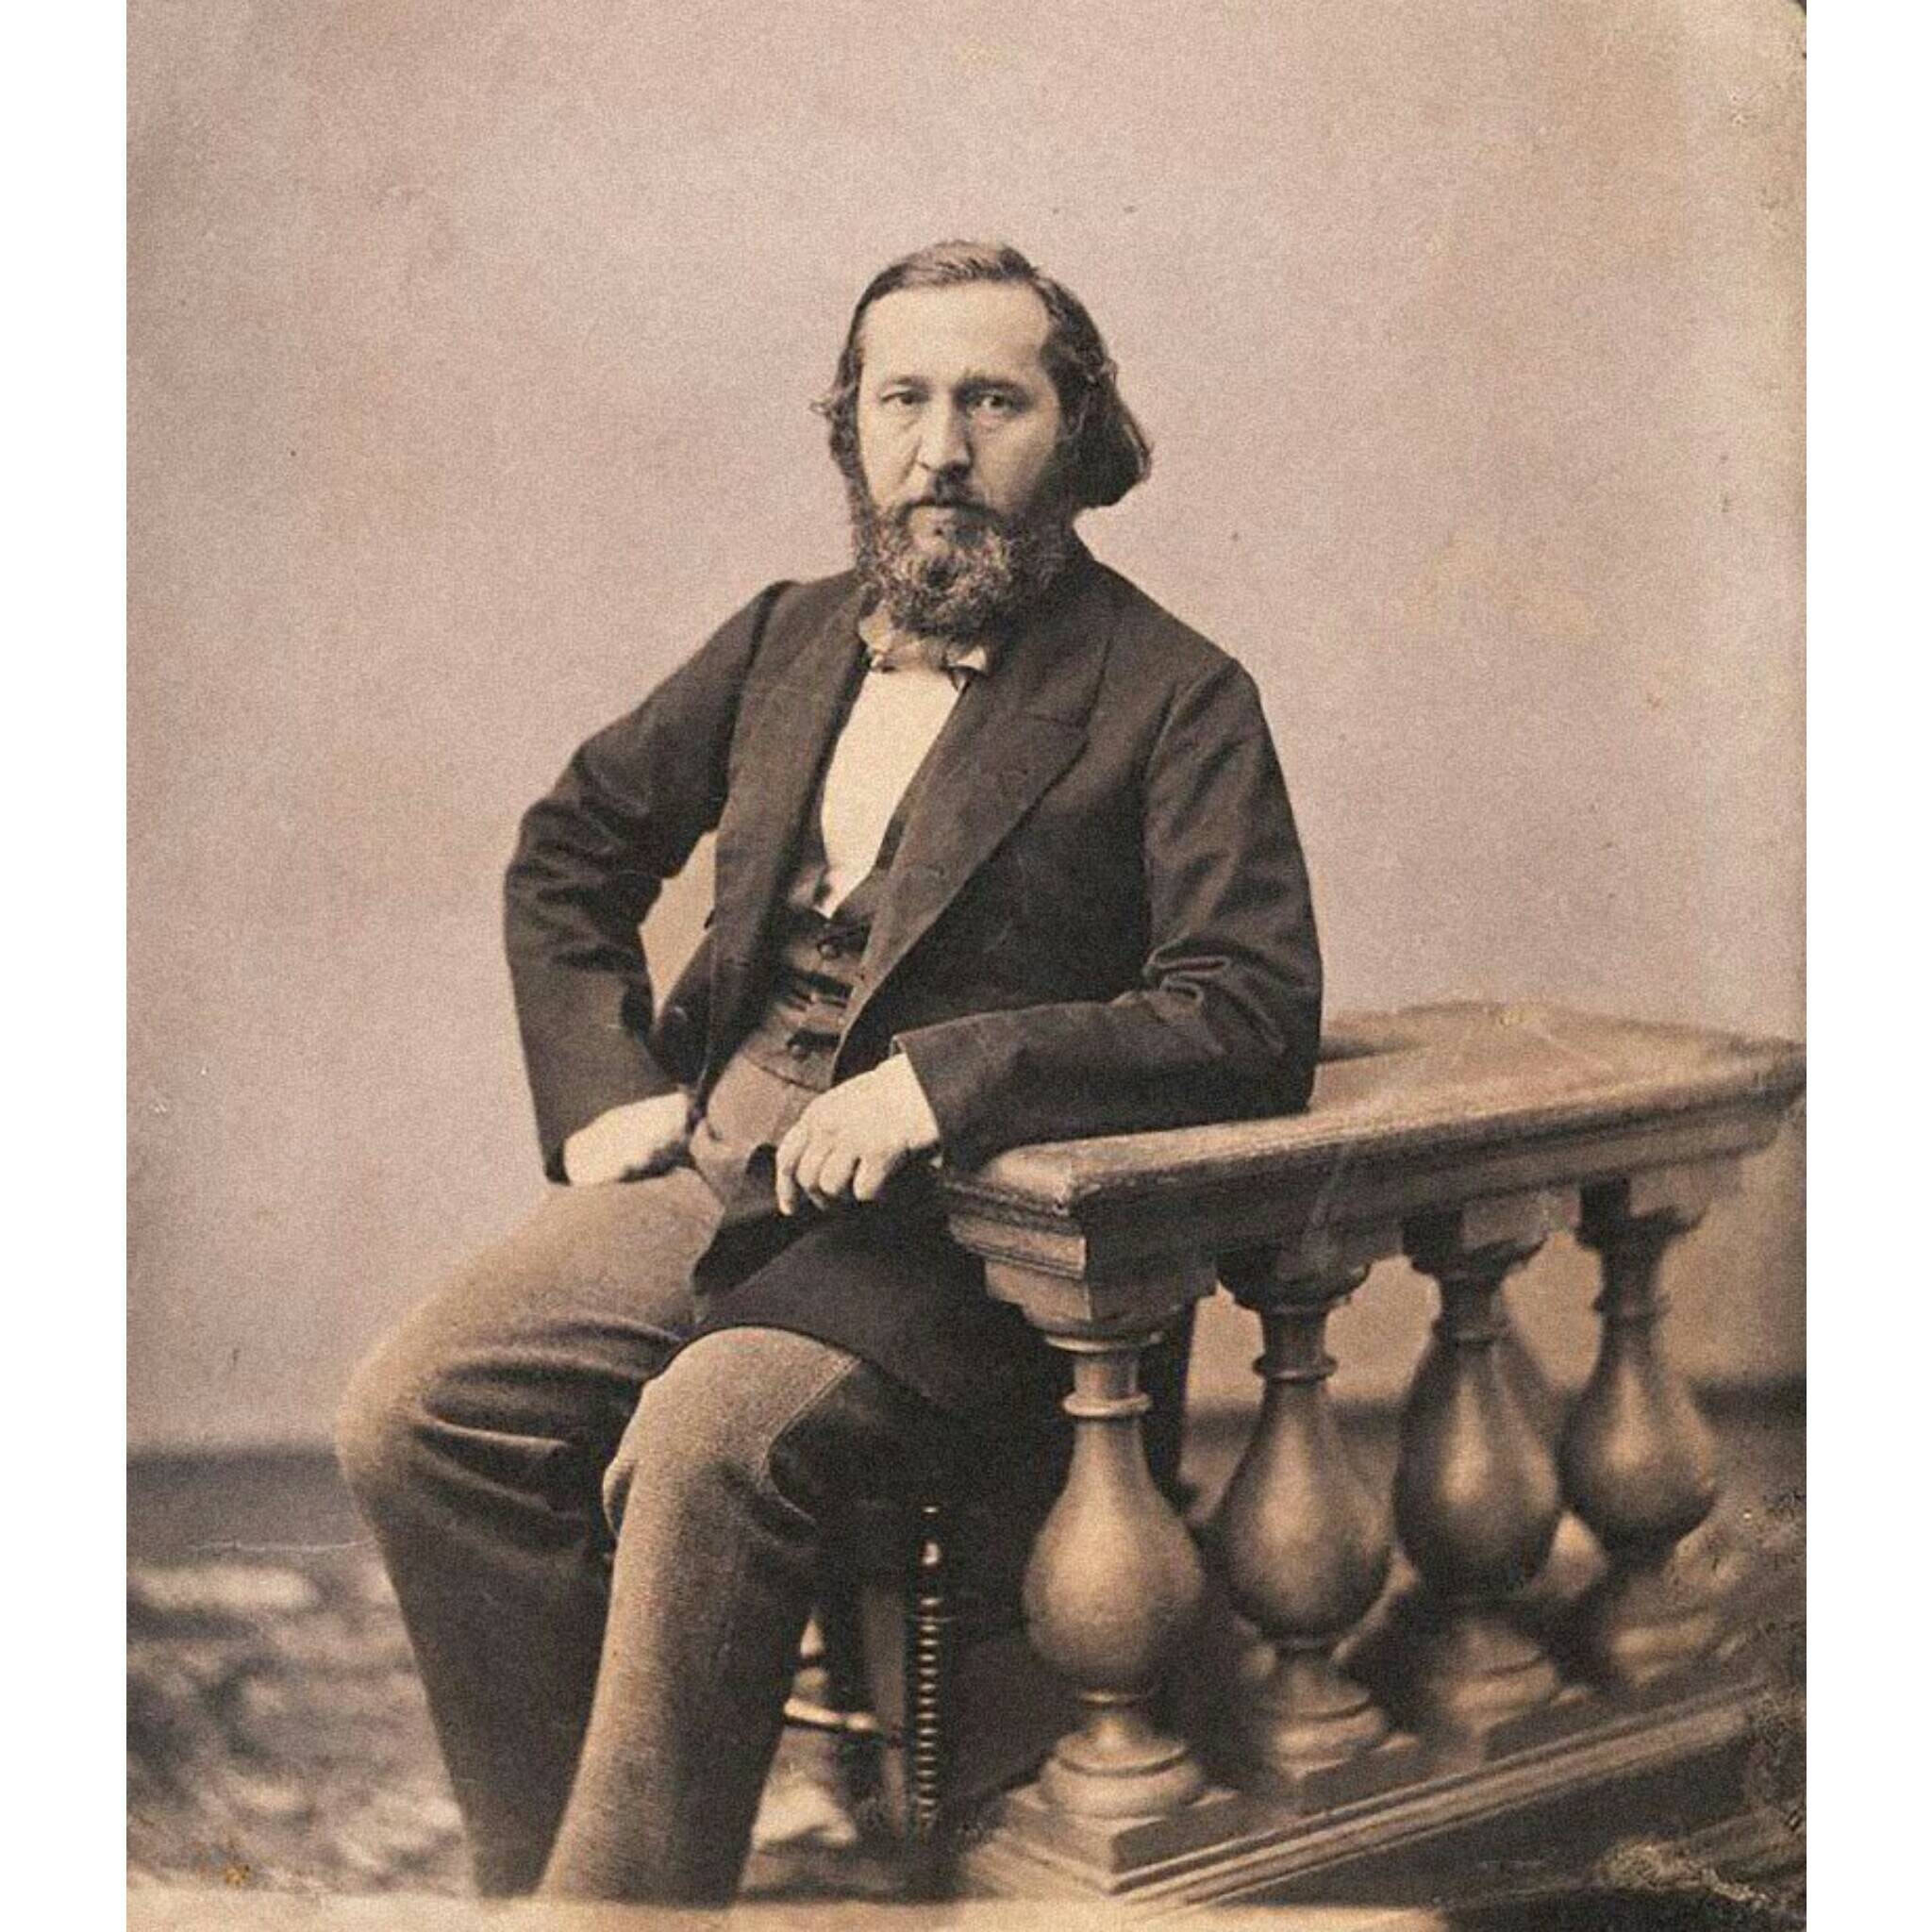 Русский писатель Аксаков К.А. (фото Бергнера, конец 1850-х гг.)